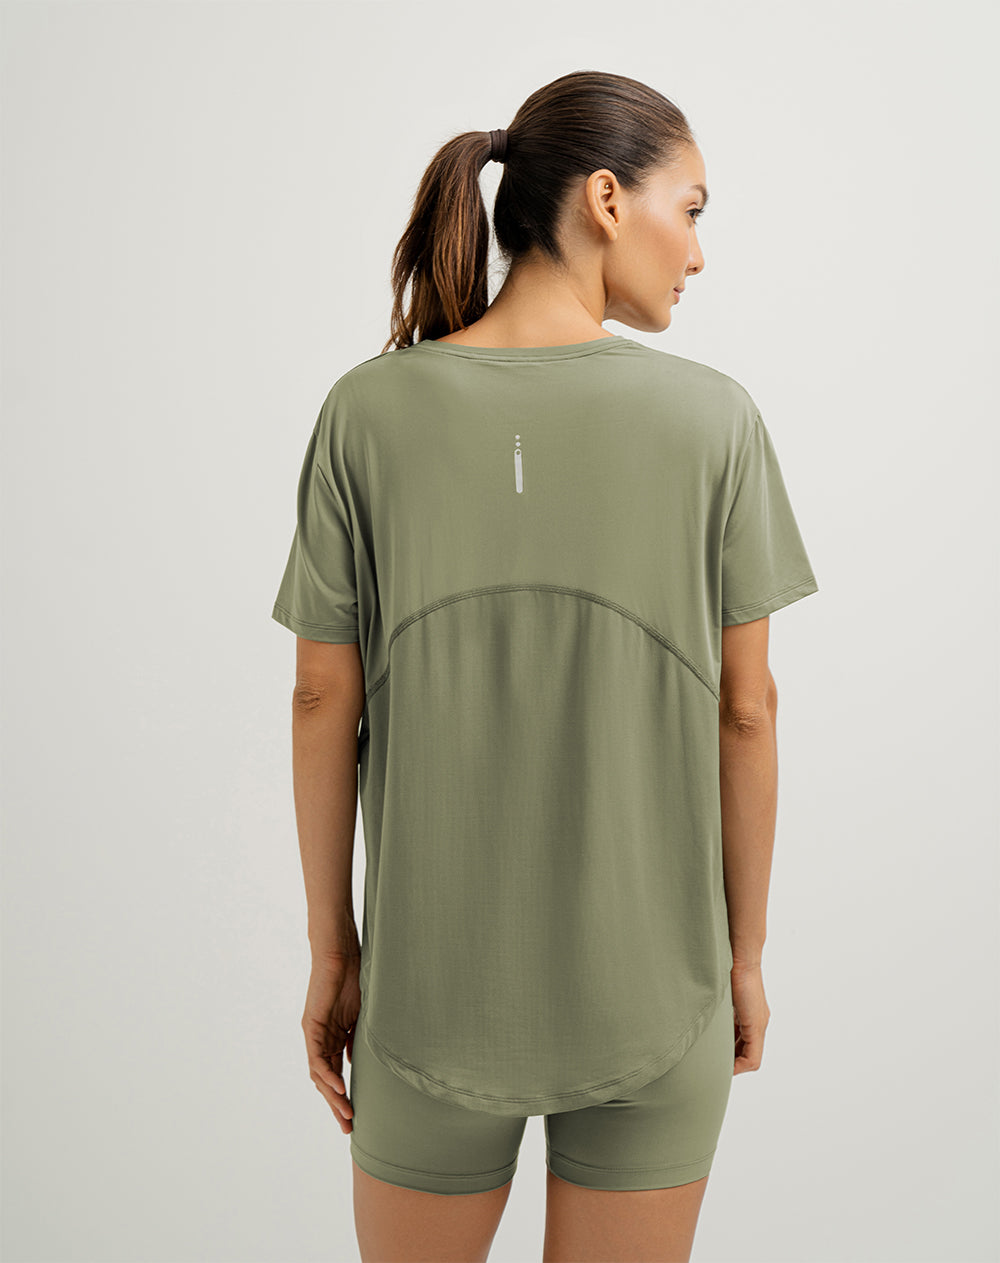 Camiseta kowi regular fit manga corta verde oliva